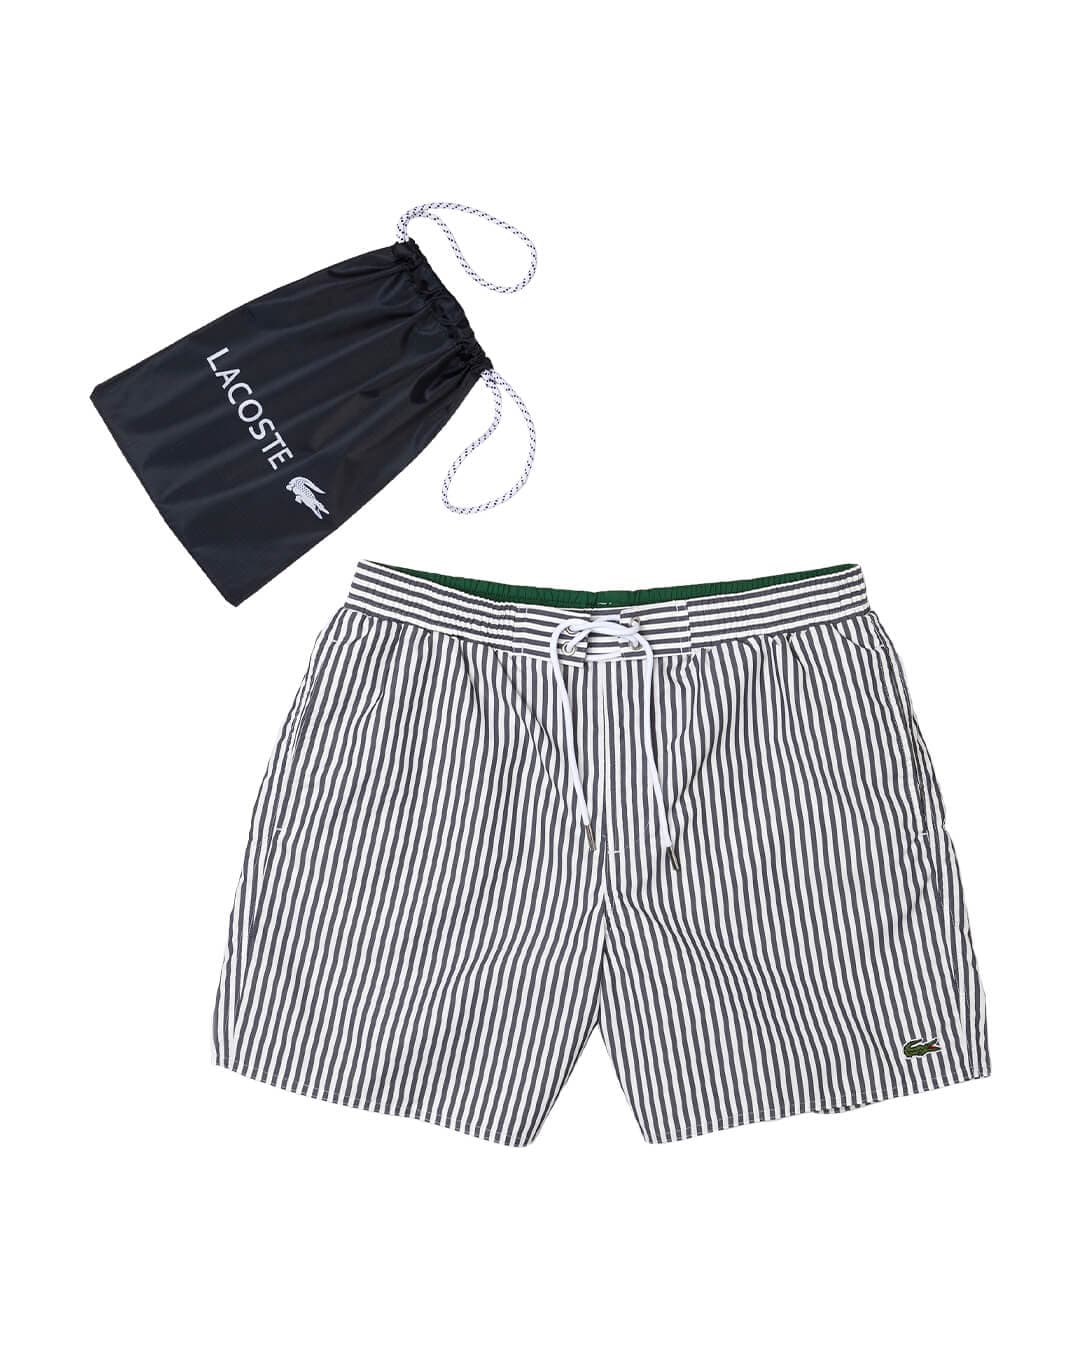 Lacoste Swimwear Lacoste Striped Navy Swim Shorts